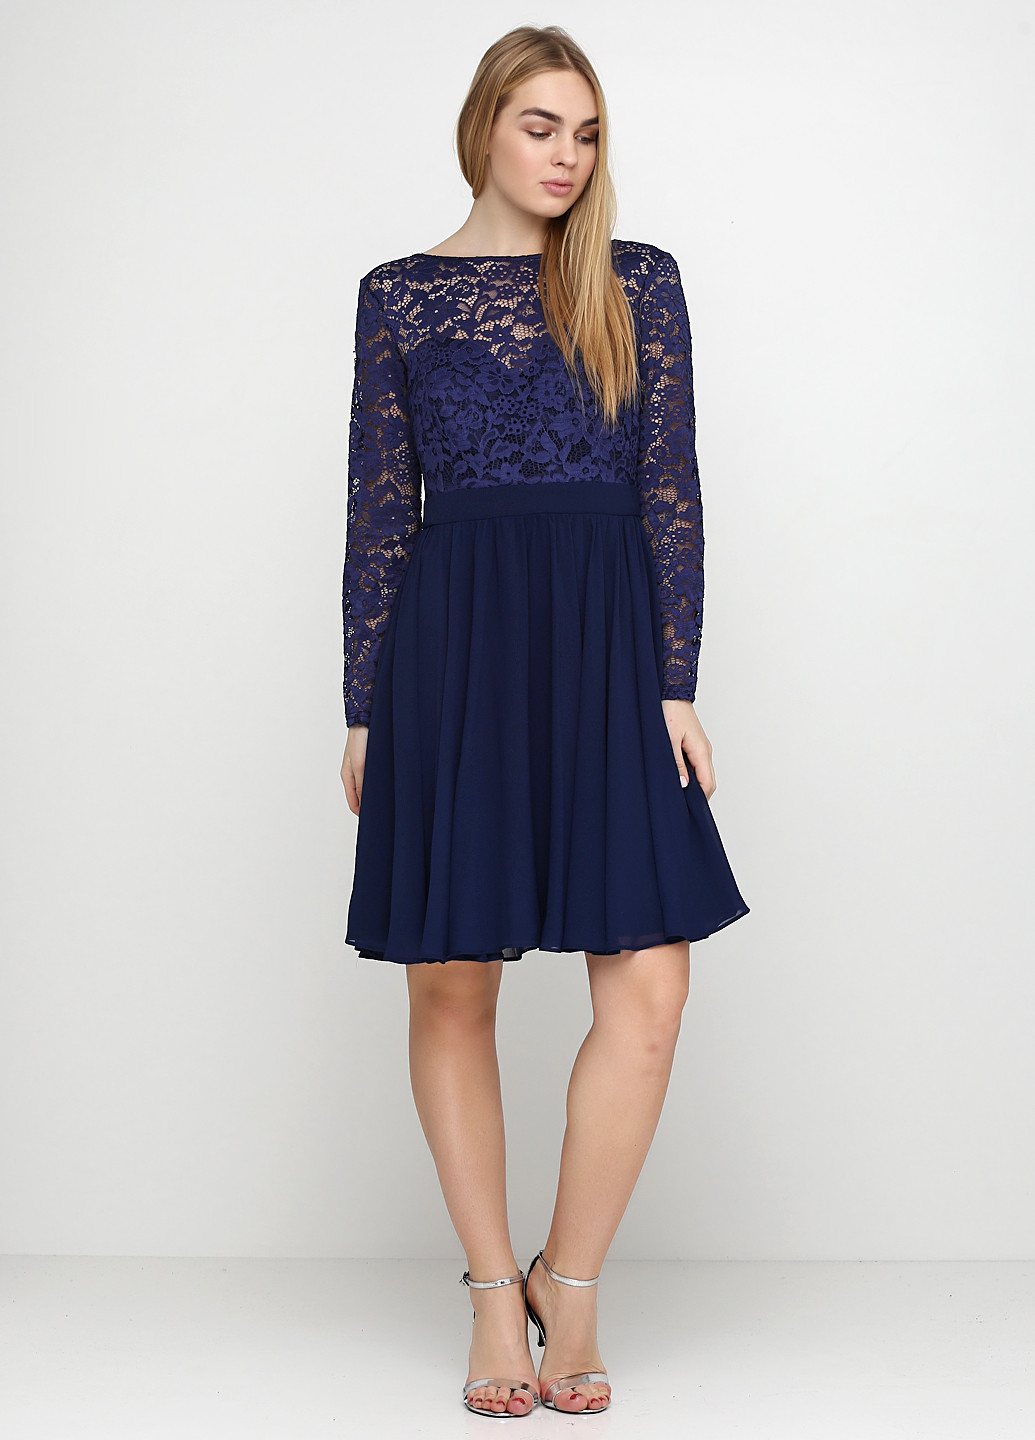 Синее вечернее платье Young Couture фактурное